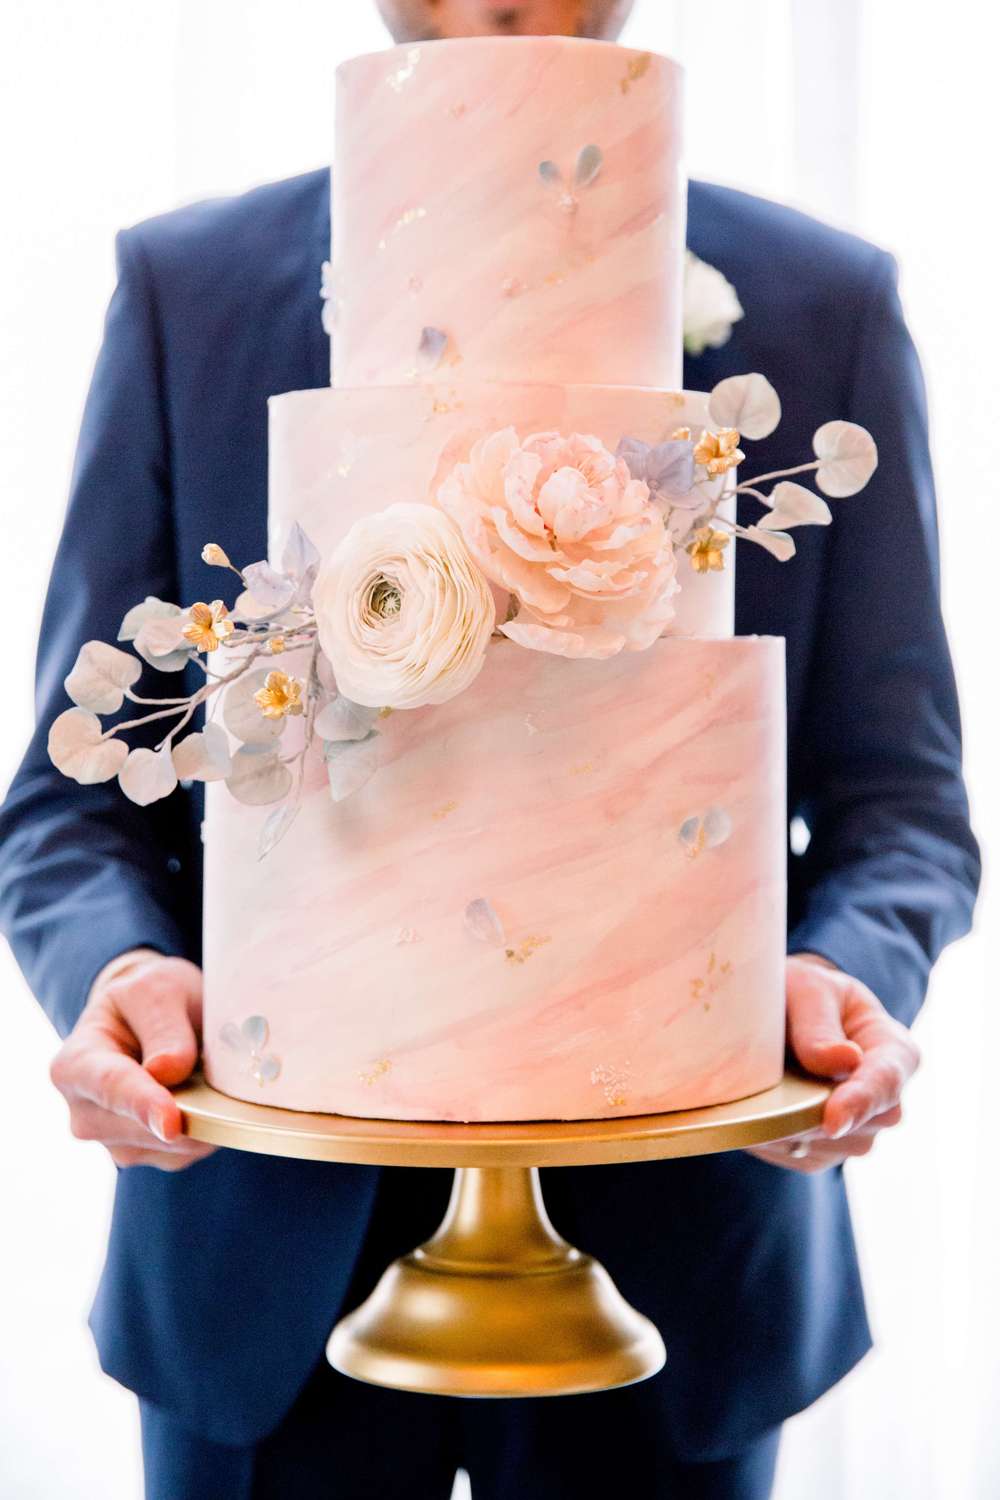 27 Amazing Celebrity Wedding Cakes - Royal Wedding Cakes, Celeb Cakes